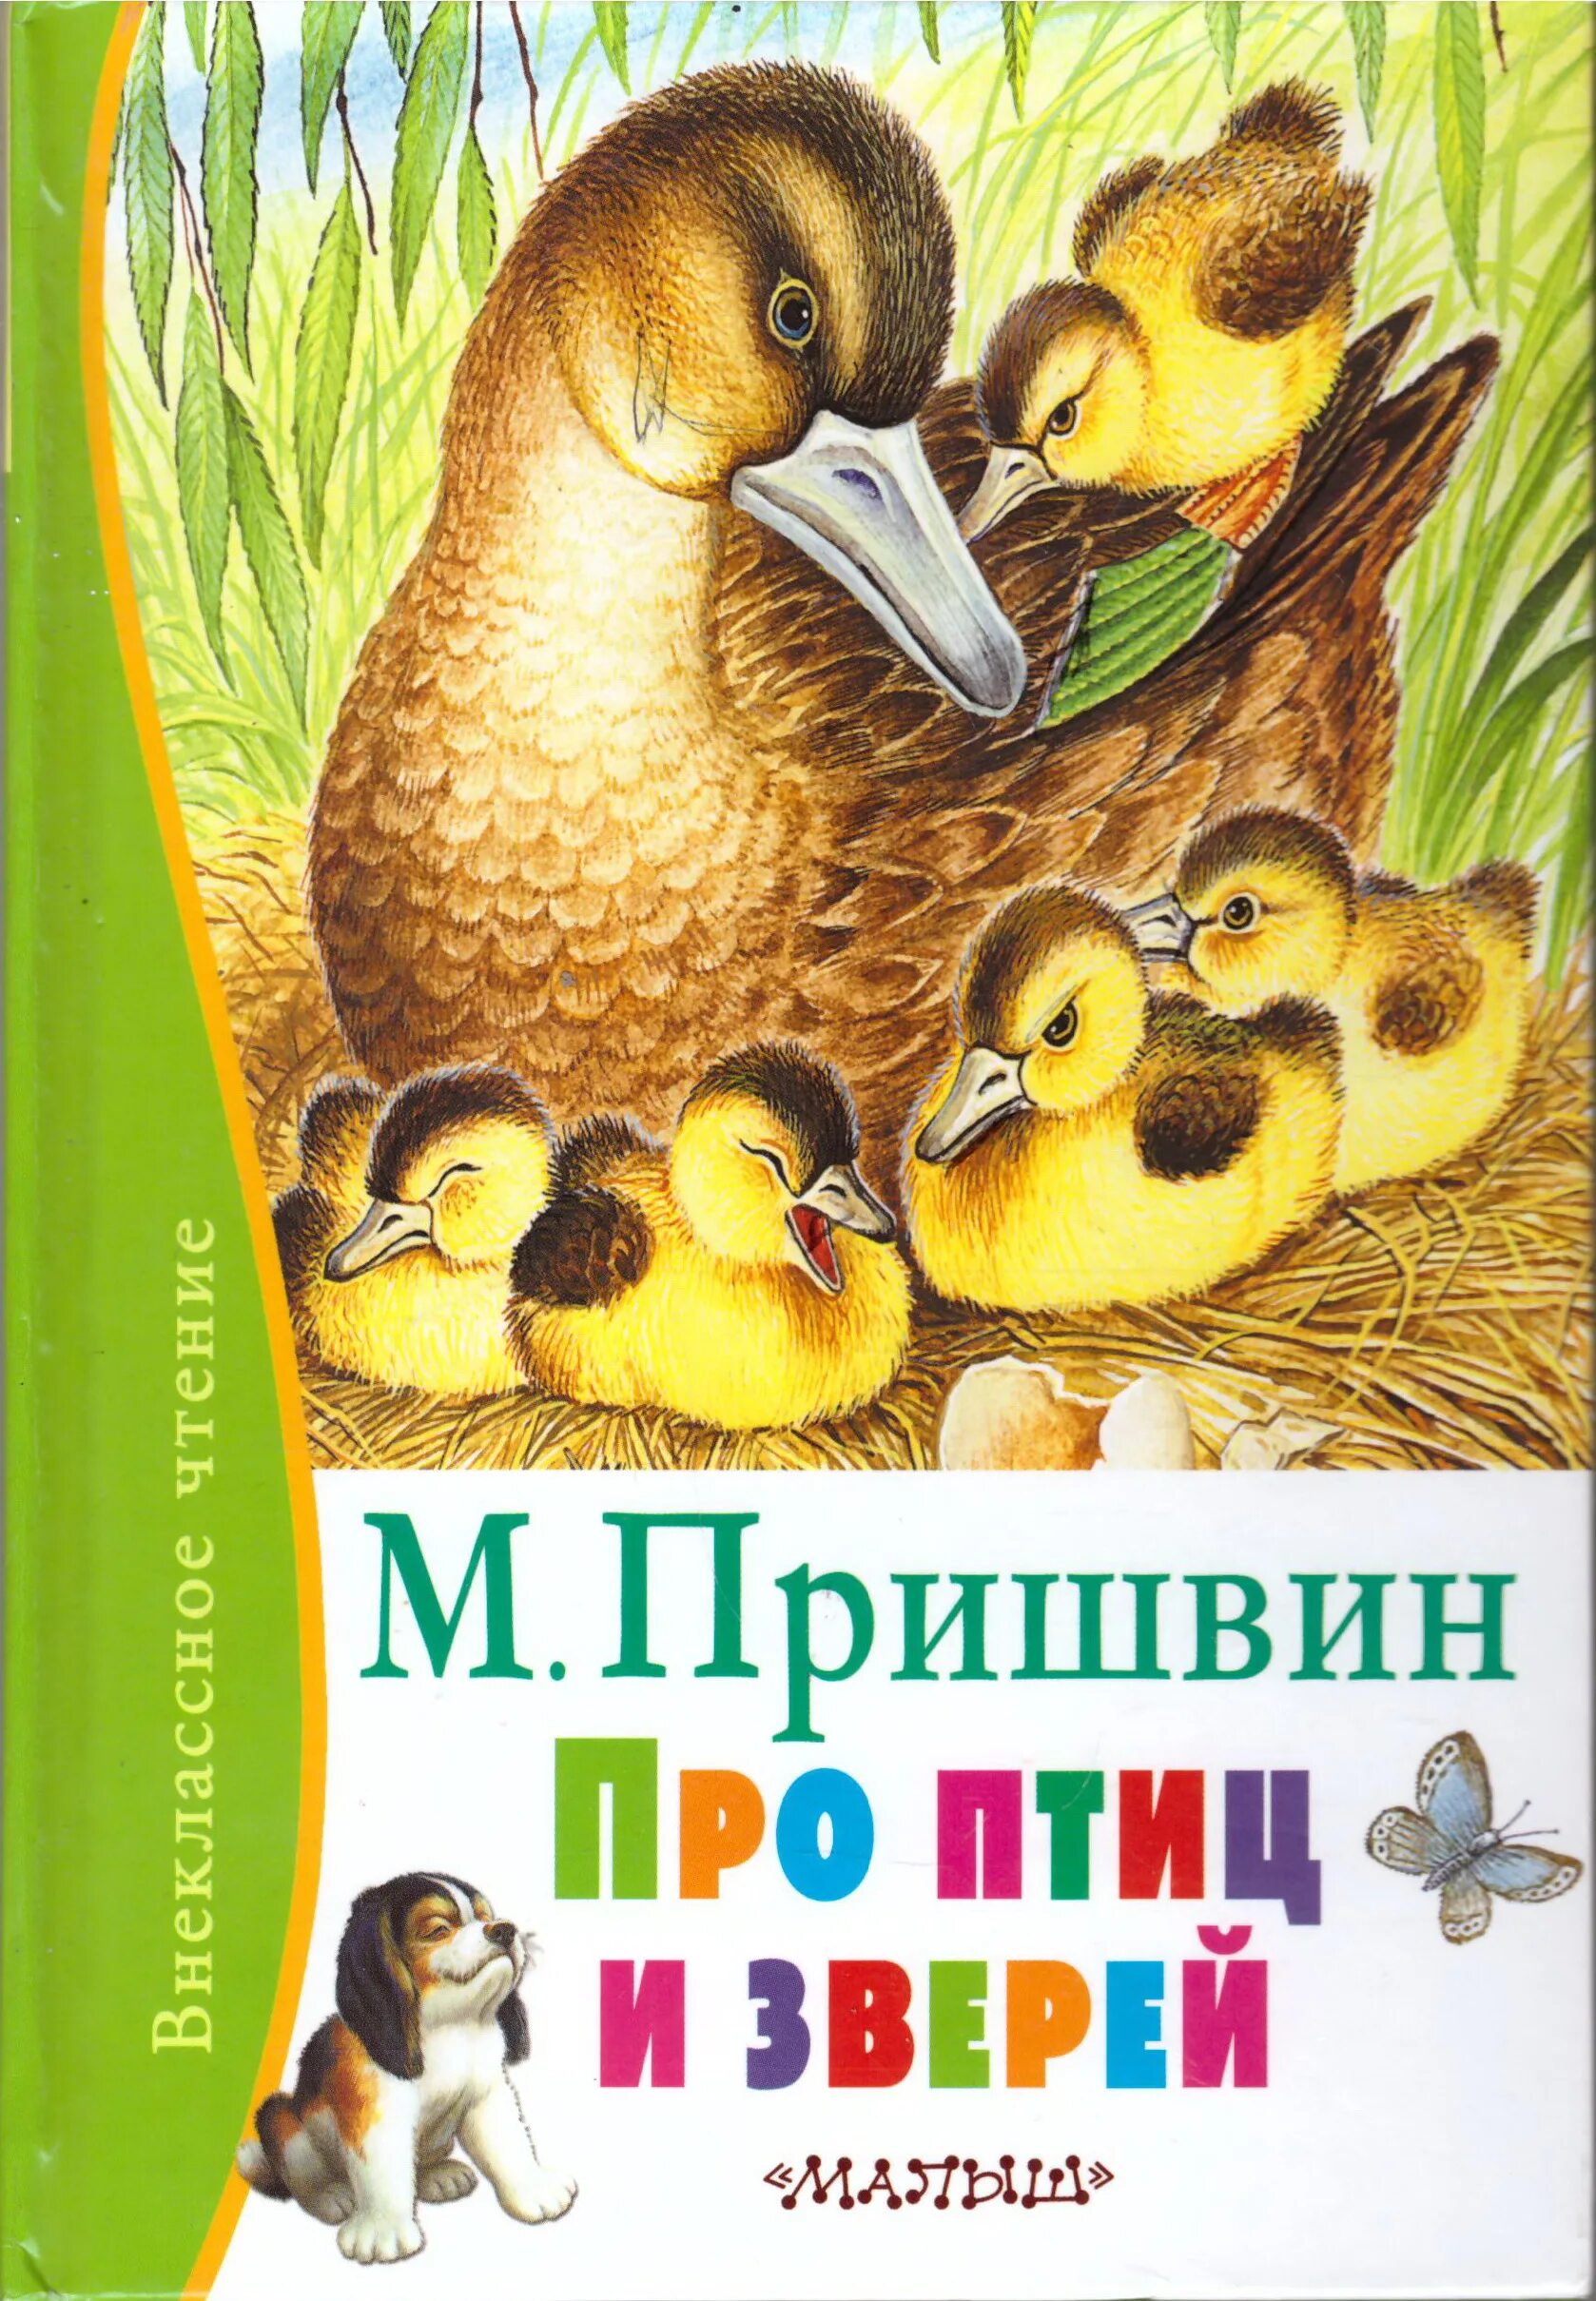 Пришвин про птиц и зверей книга. Обложка книги о животных.